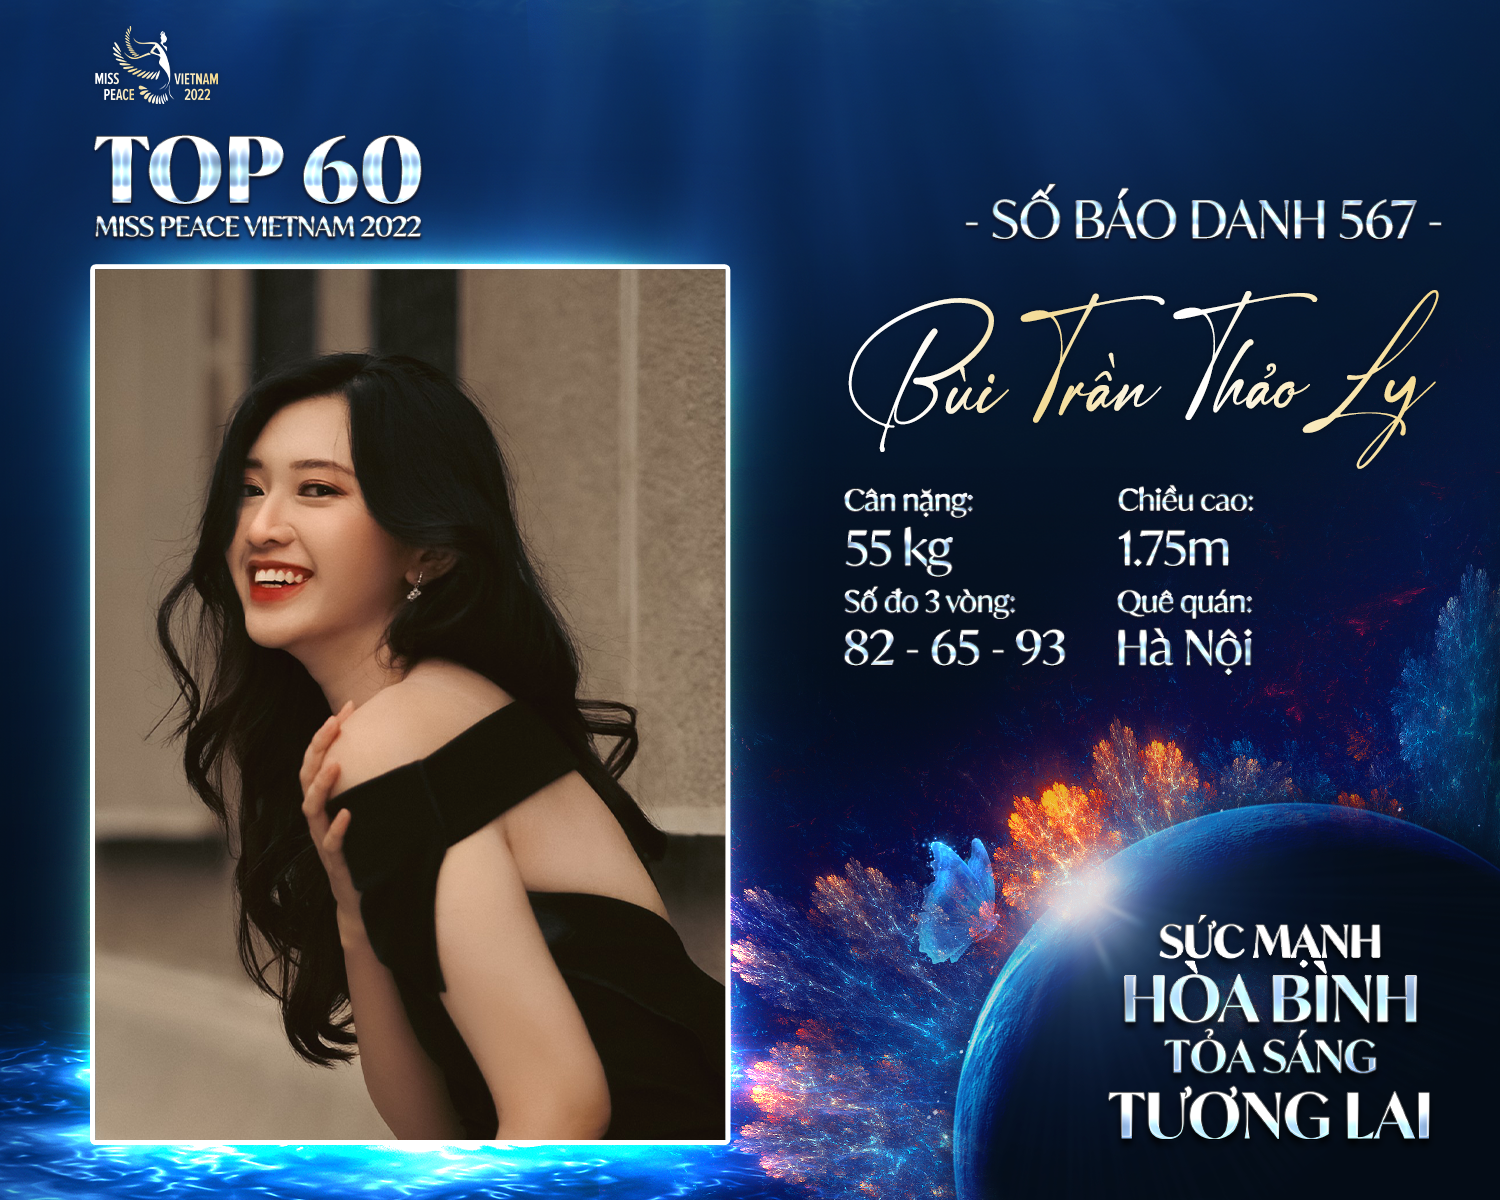 5 gương mặt sáng giá của Hoa hậu Hòa bình Việt Nam 2022 gây chú ý bởi chiều cao “khủng”, ngoại ngữ “đỉnh” - Ảnh 4.